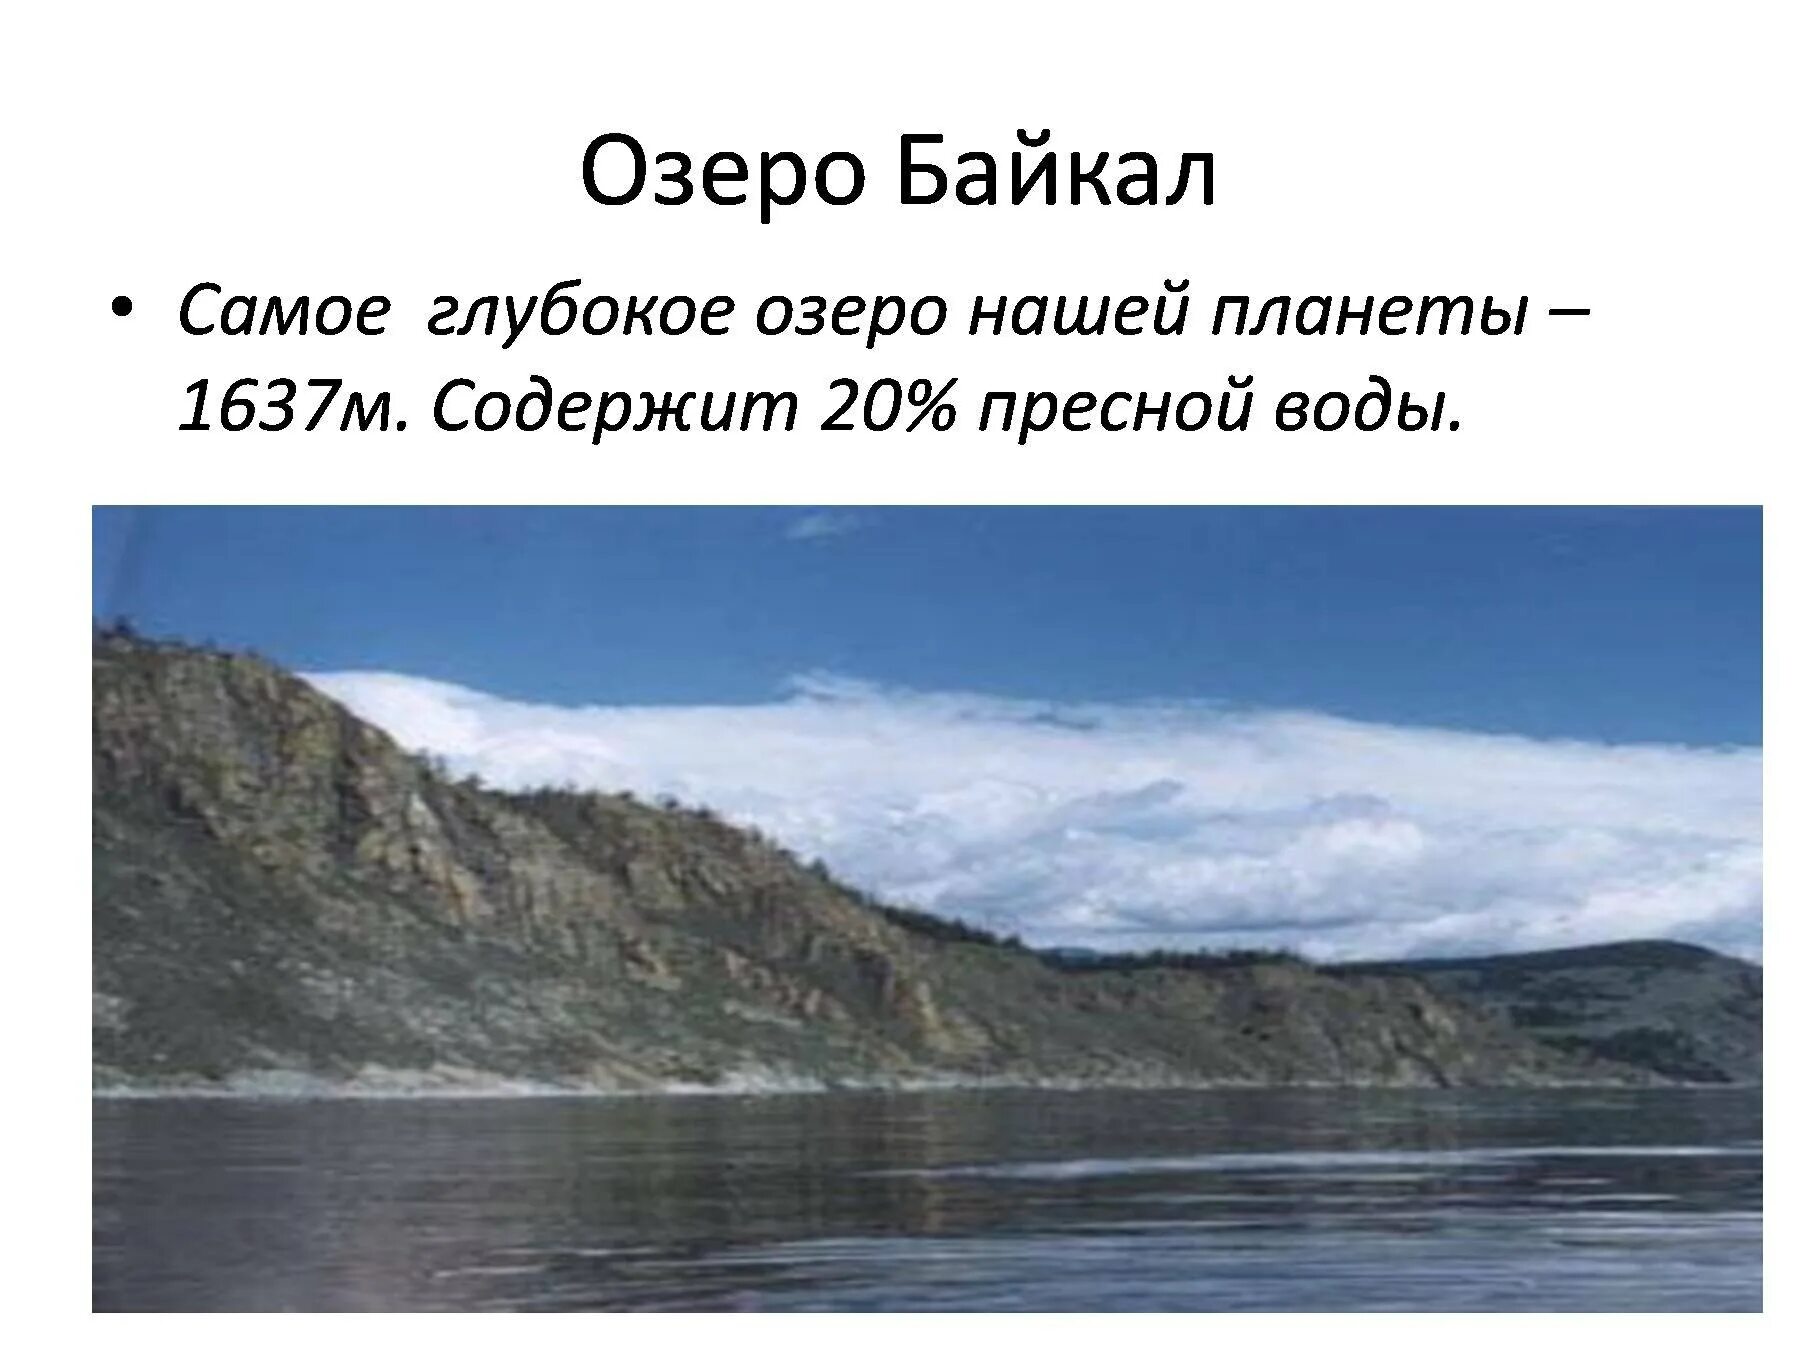 Самое глубокое озеро нашей планеты. Диктант озеро Байкал. Самое глубокое озеро диктант Байкал глубочайшее озеро. Глубина озера Байкал диктант.